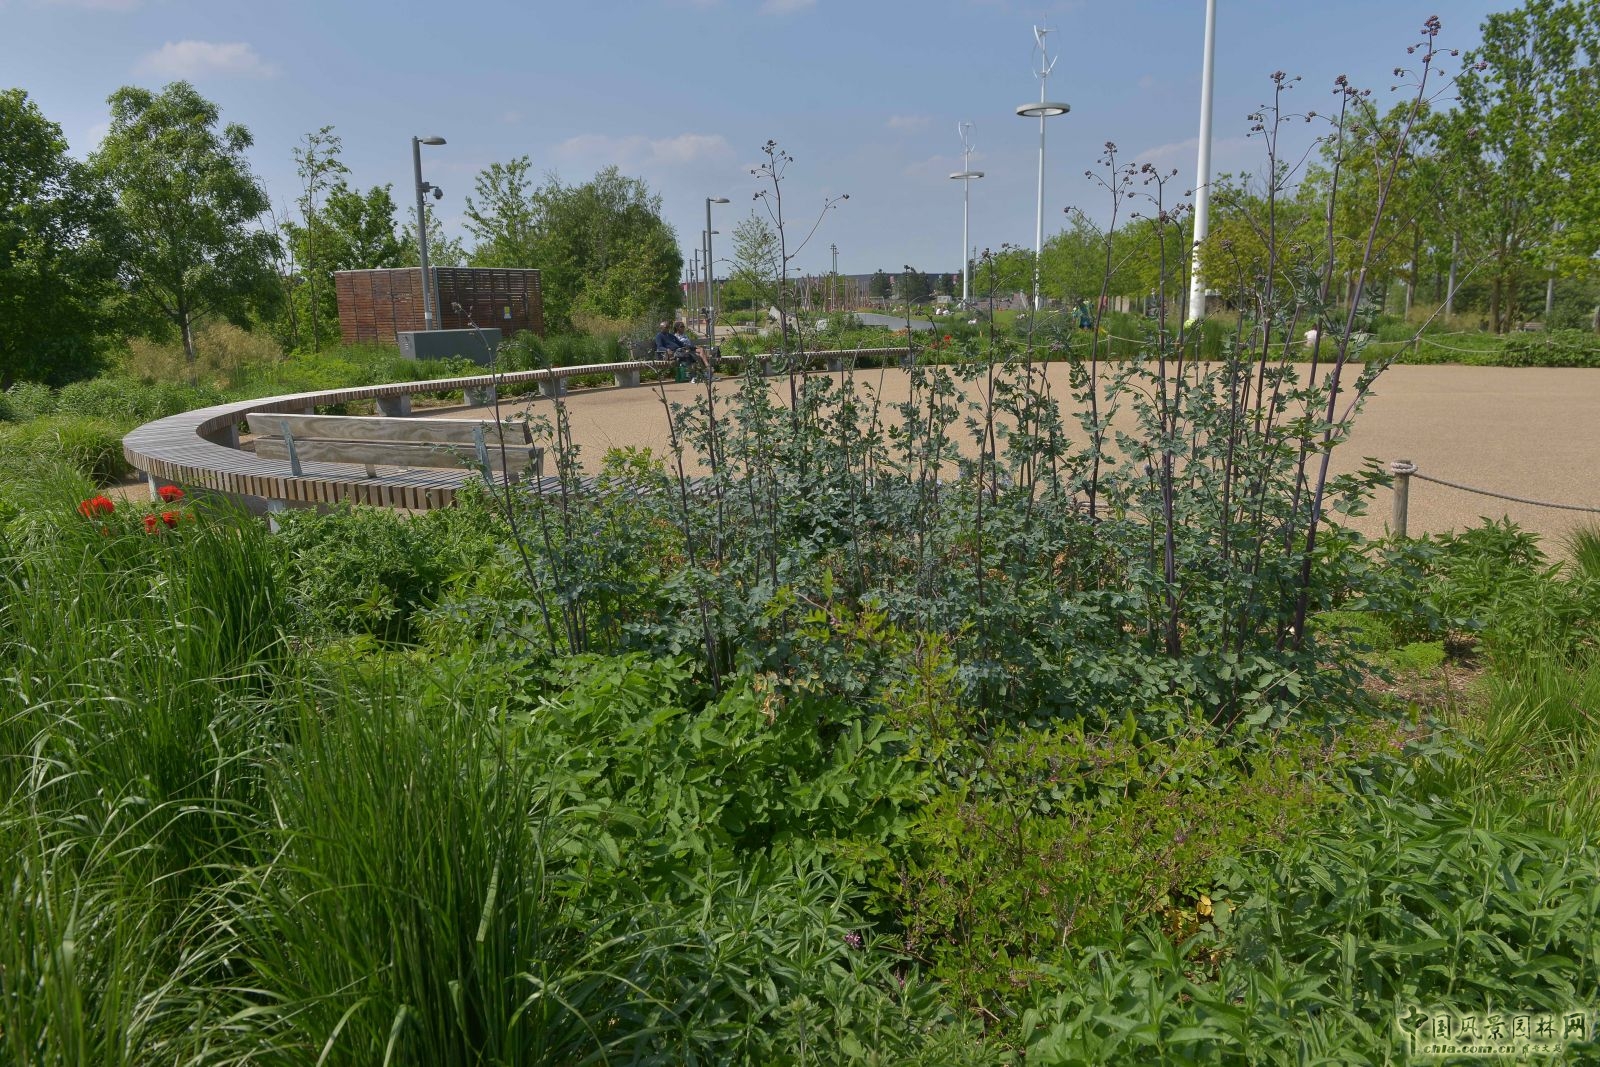 城市公园中的野花草甸——伦敦奥林匹克公园